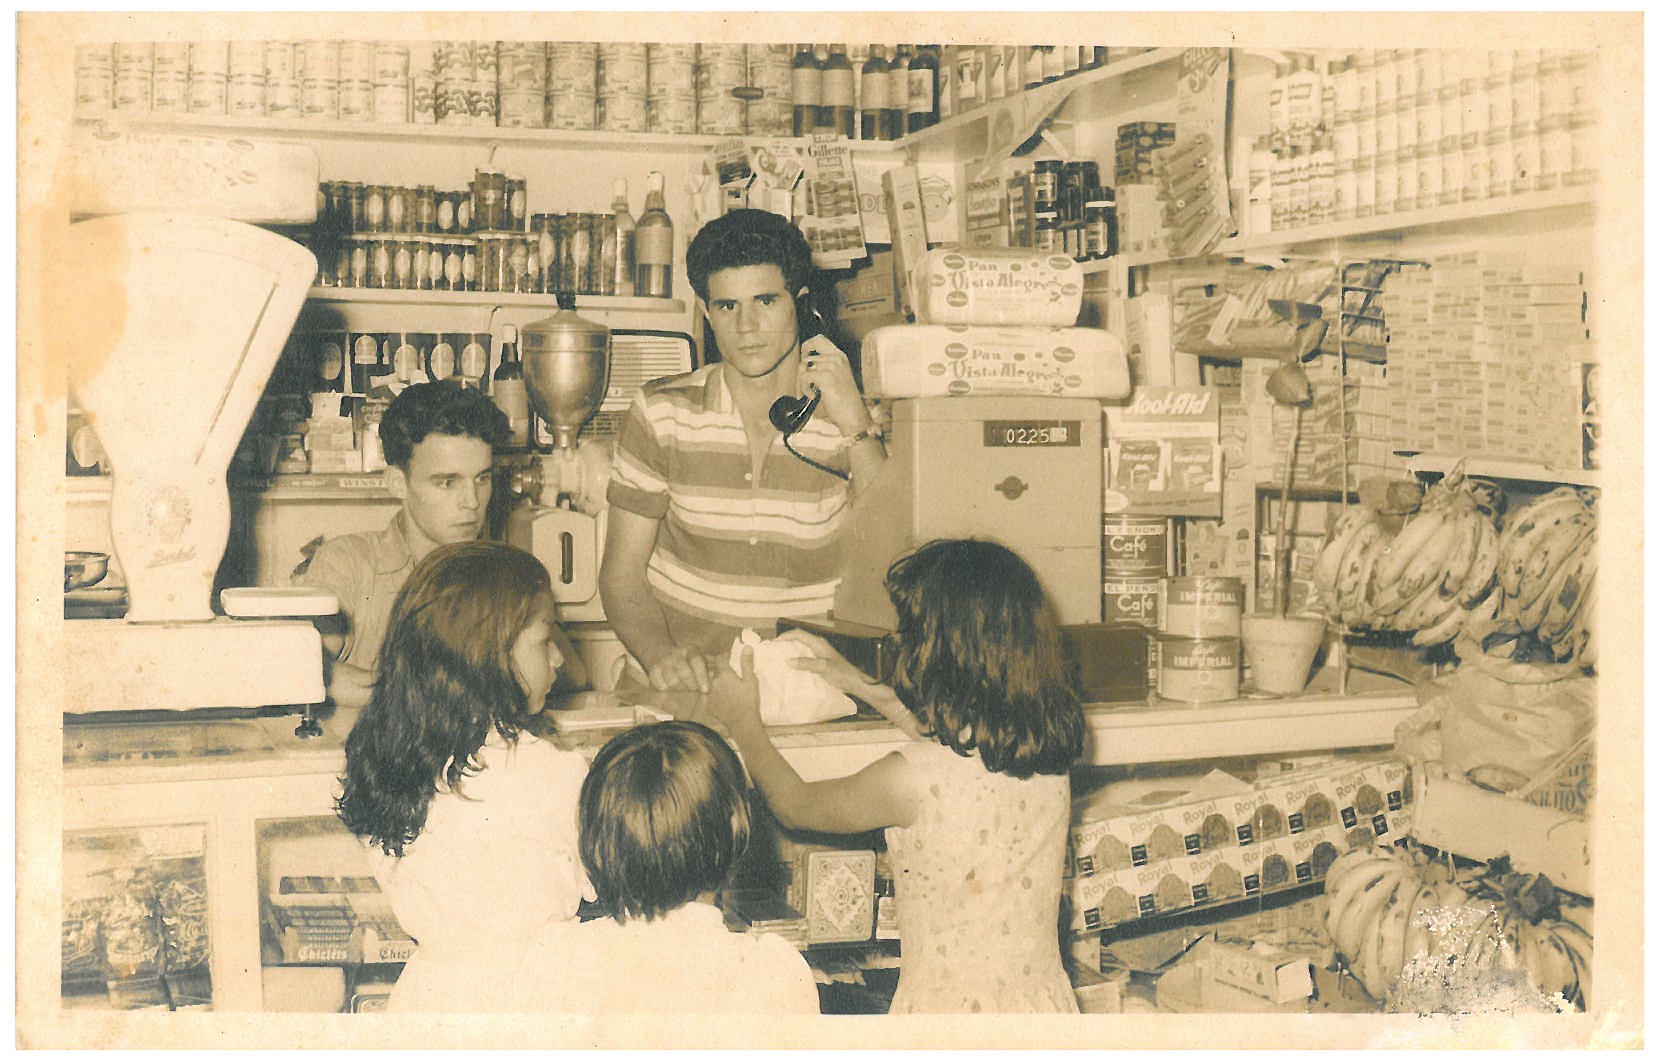 João na venda ao telefone, Venezuela, cerca de 1958